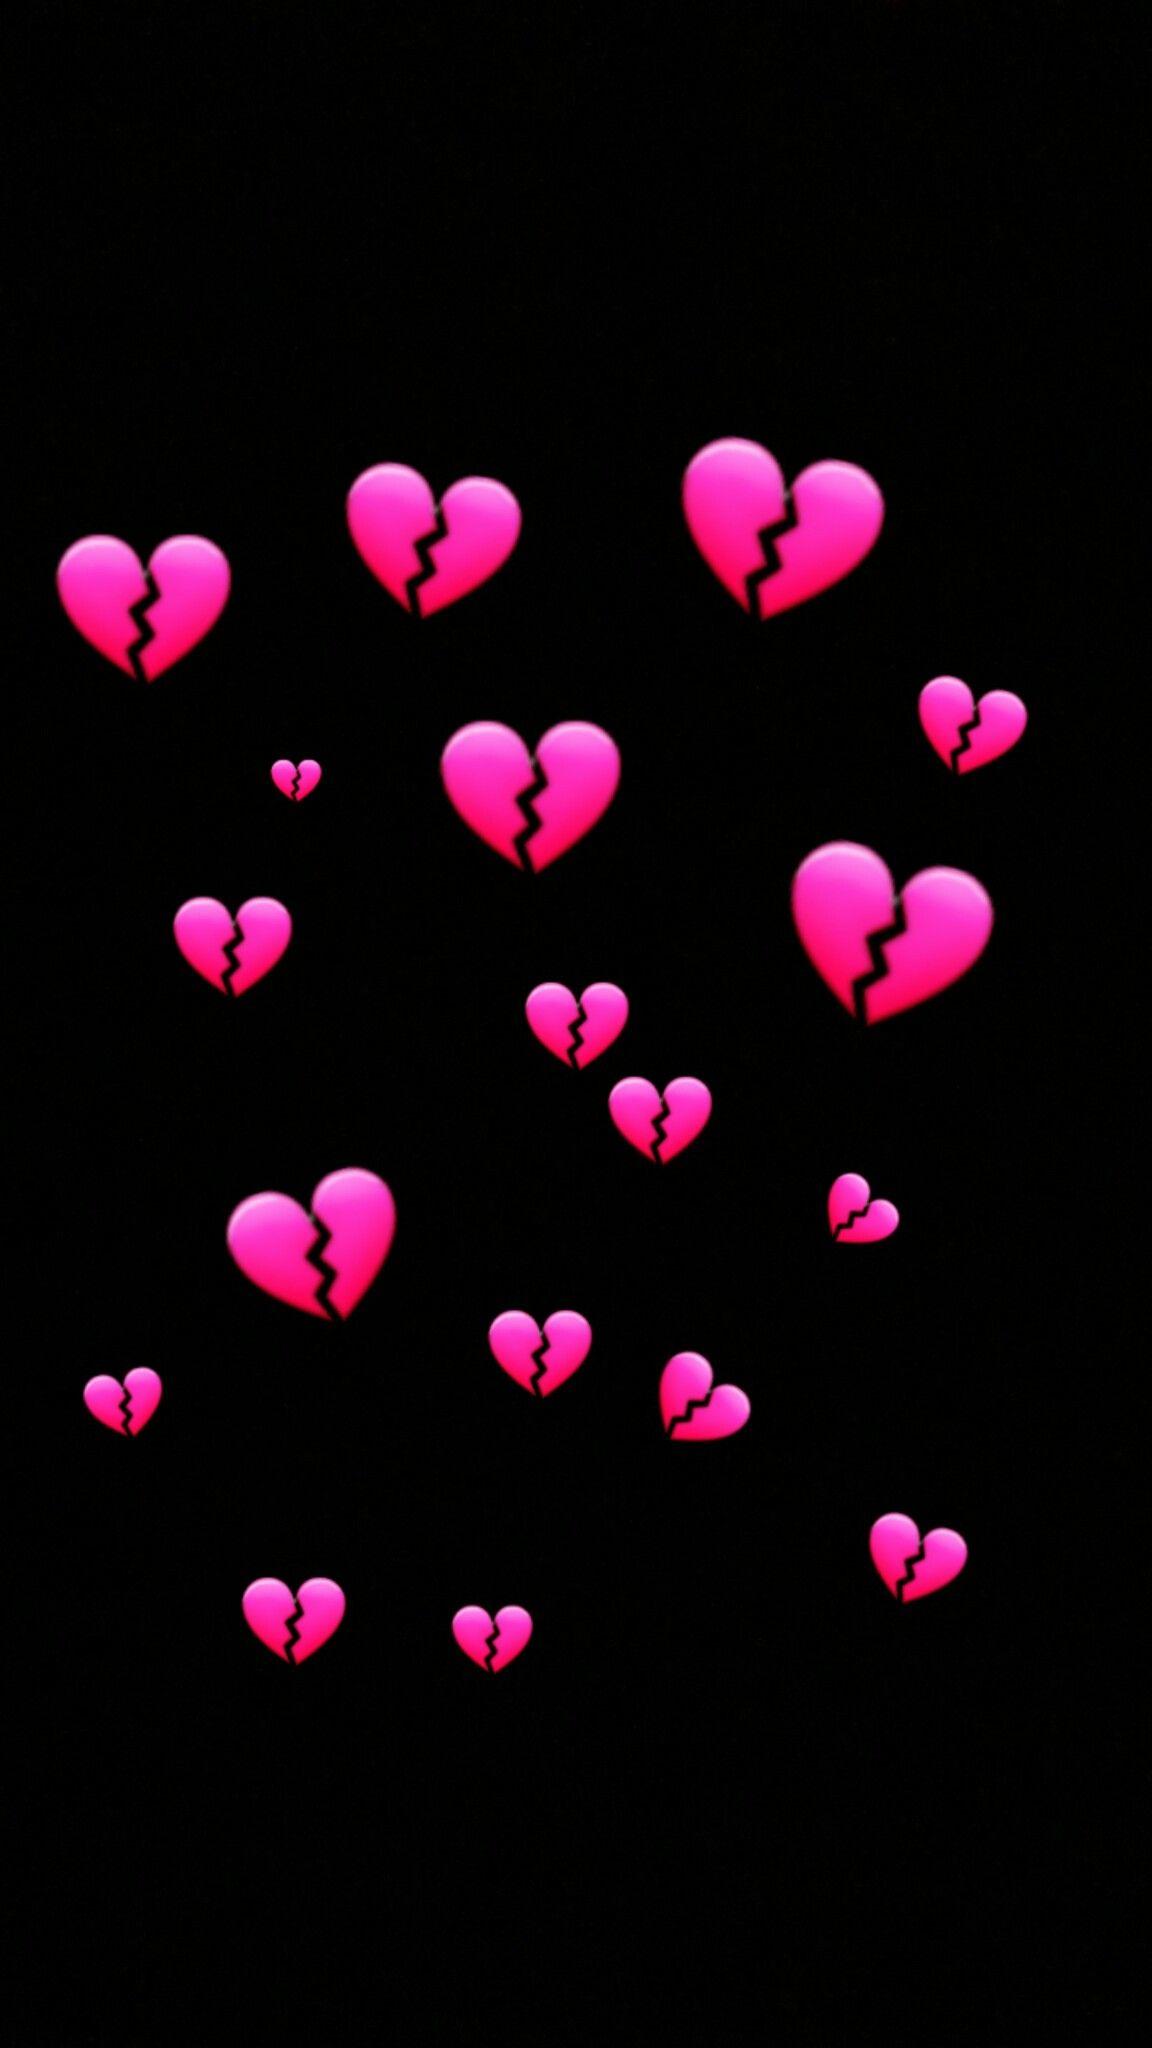 wallpaper heartbroke. Heartbreak wallpaper, Emoji wallpaper